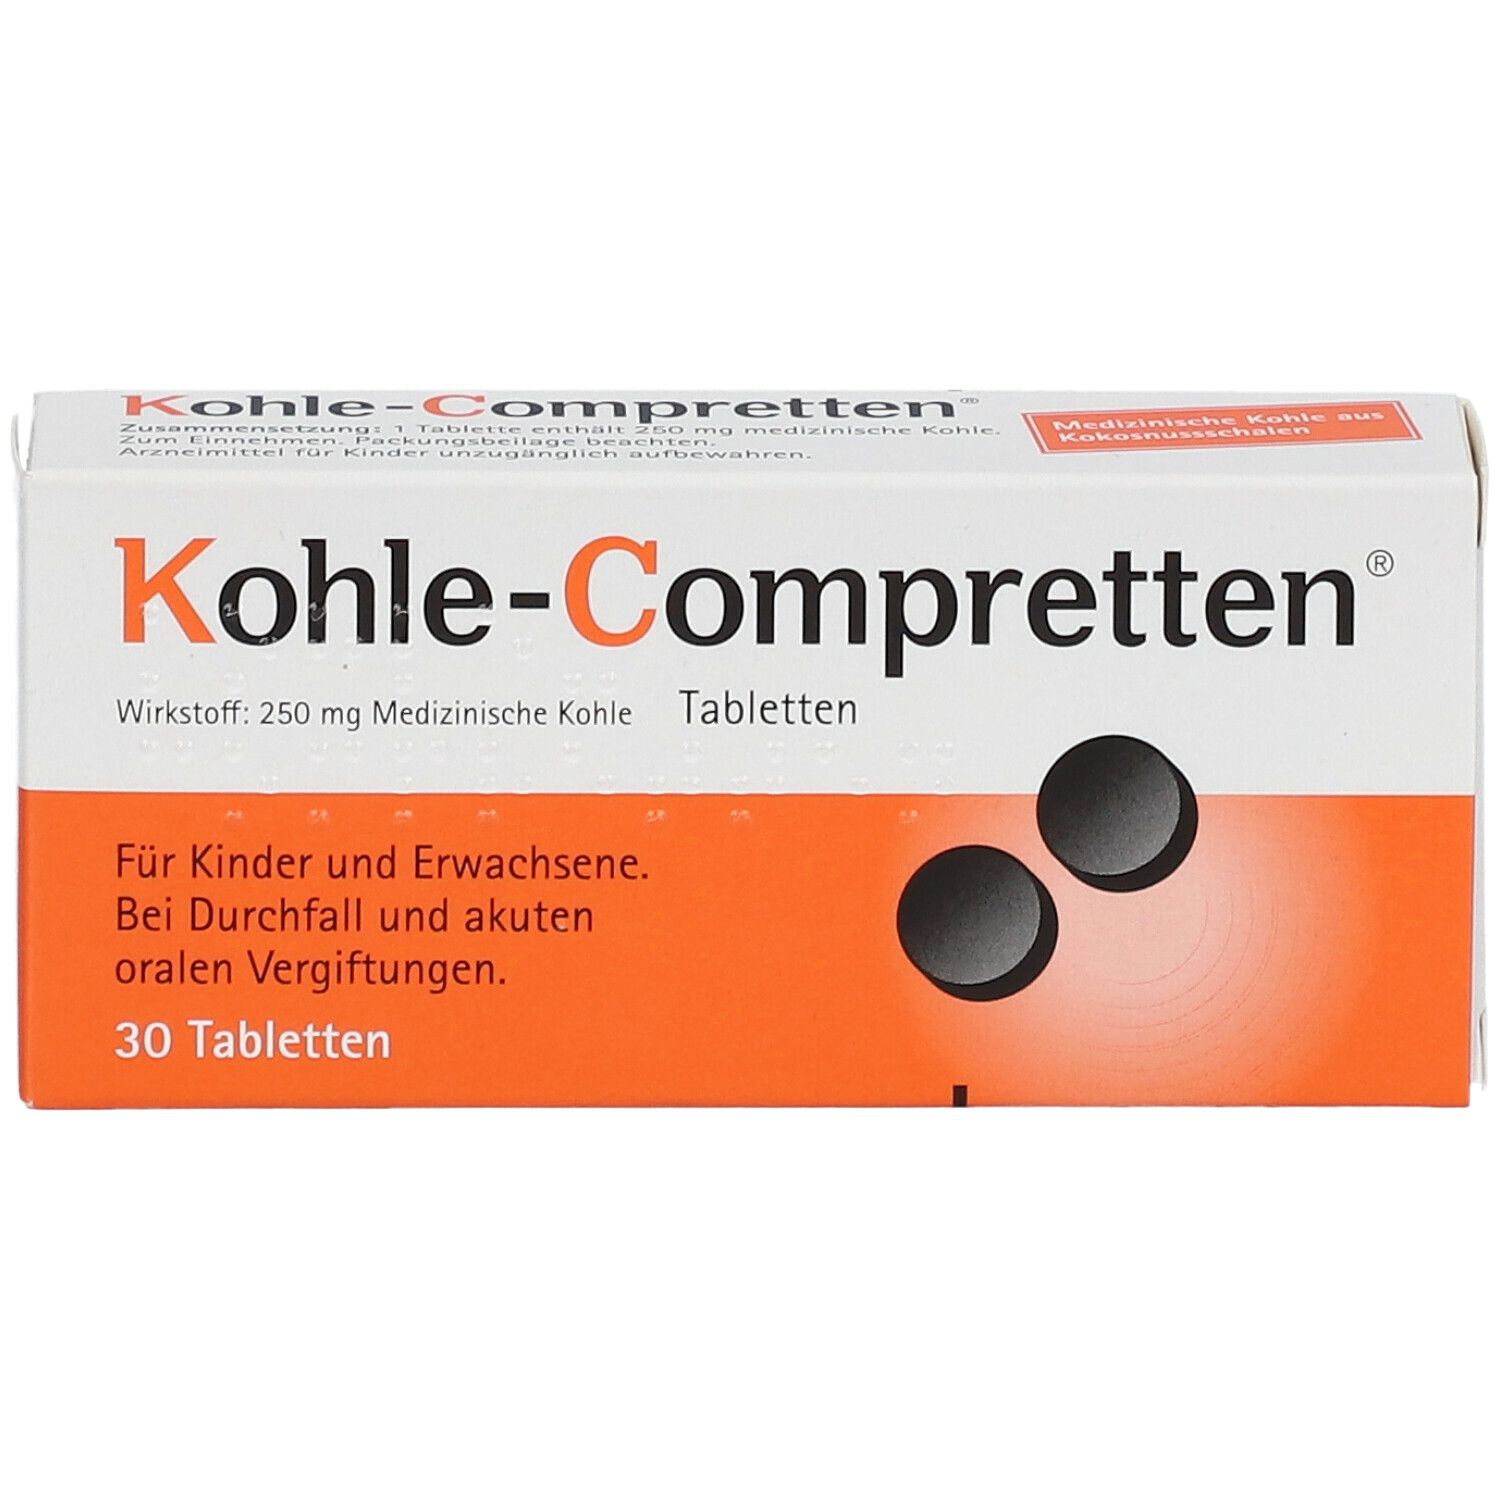 Kohle-Compretten®